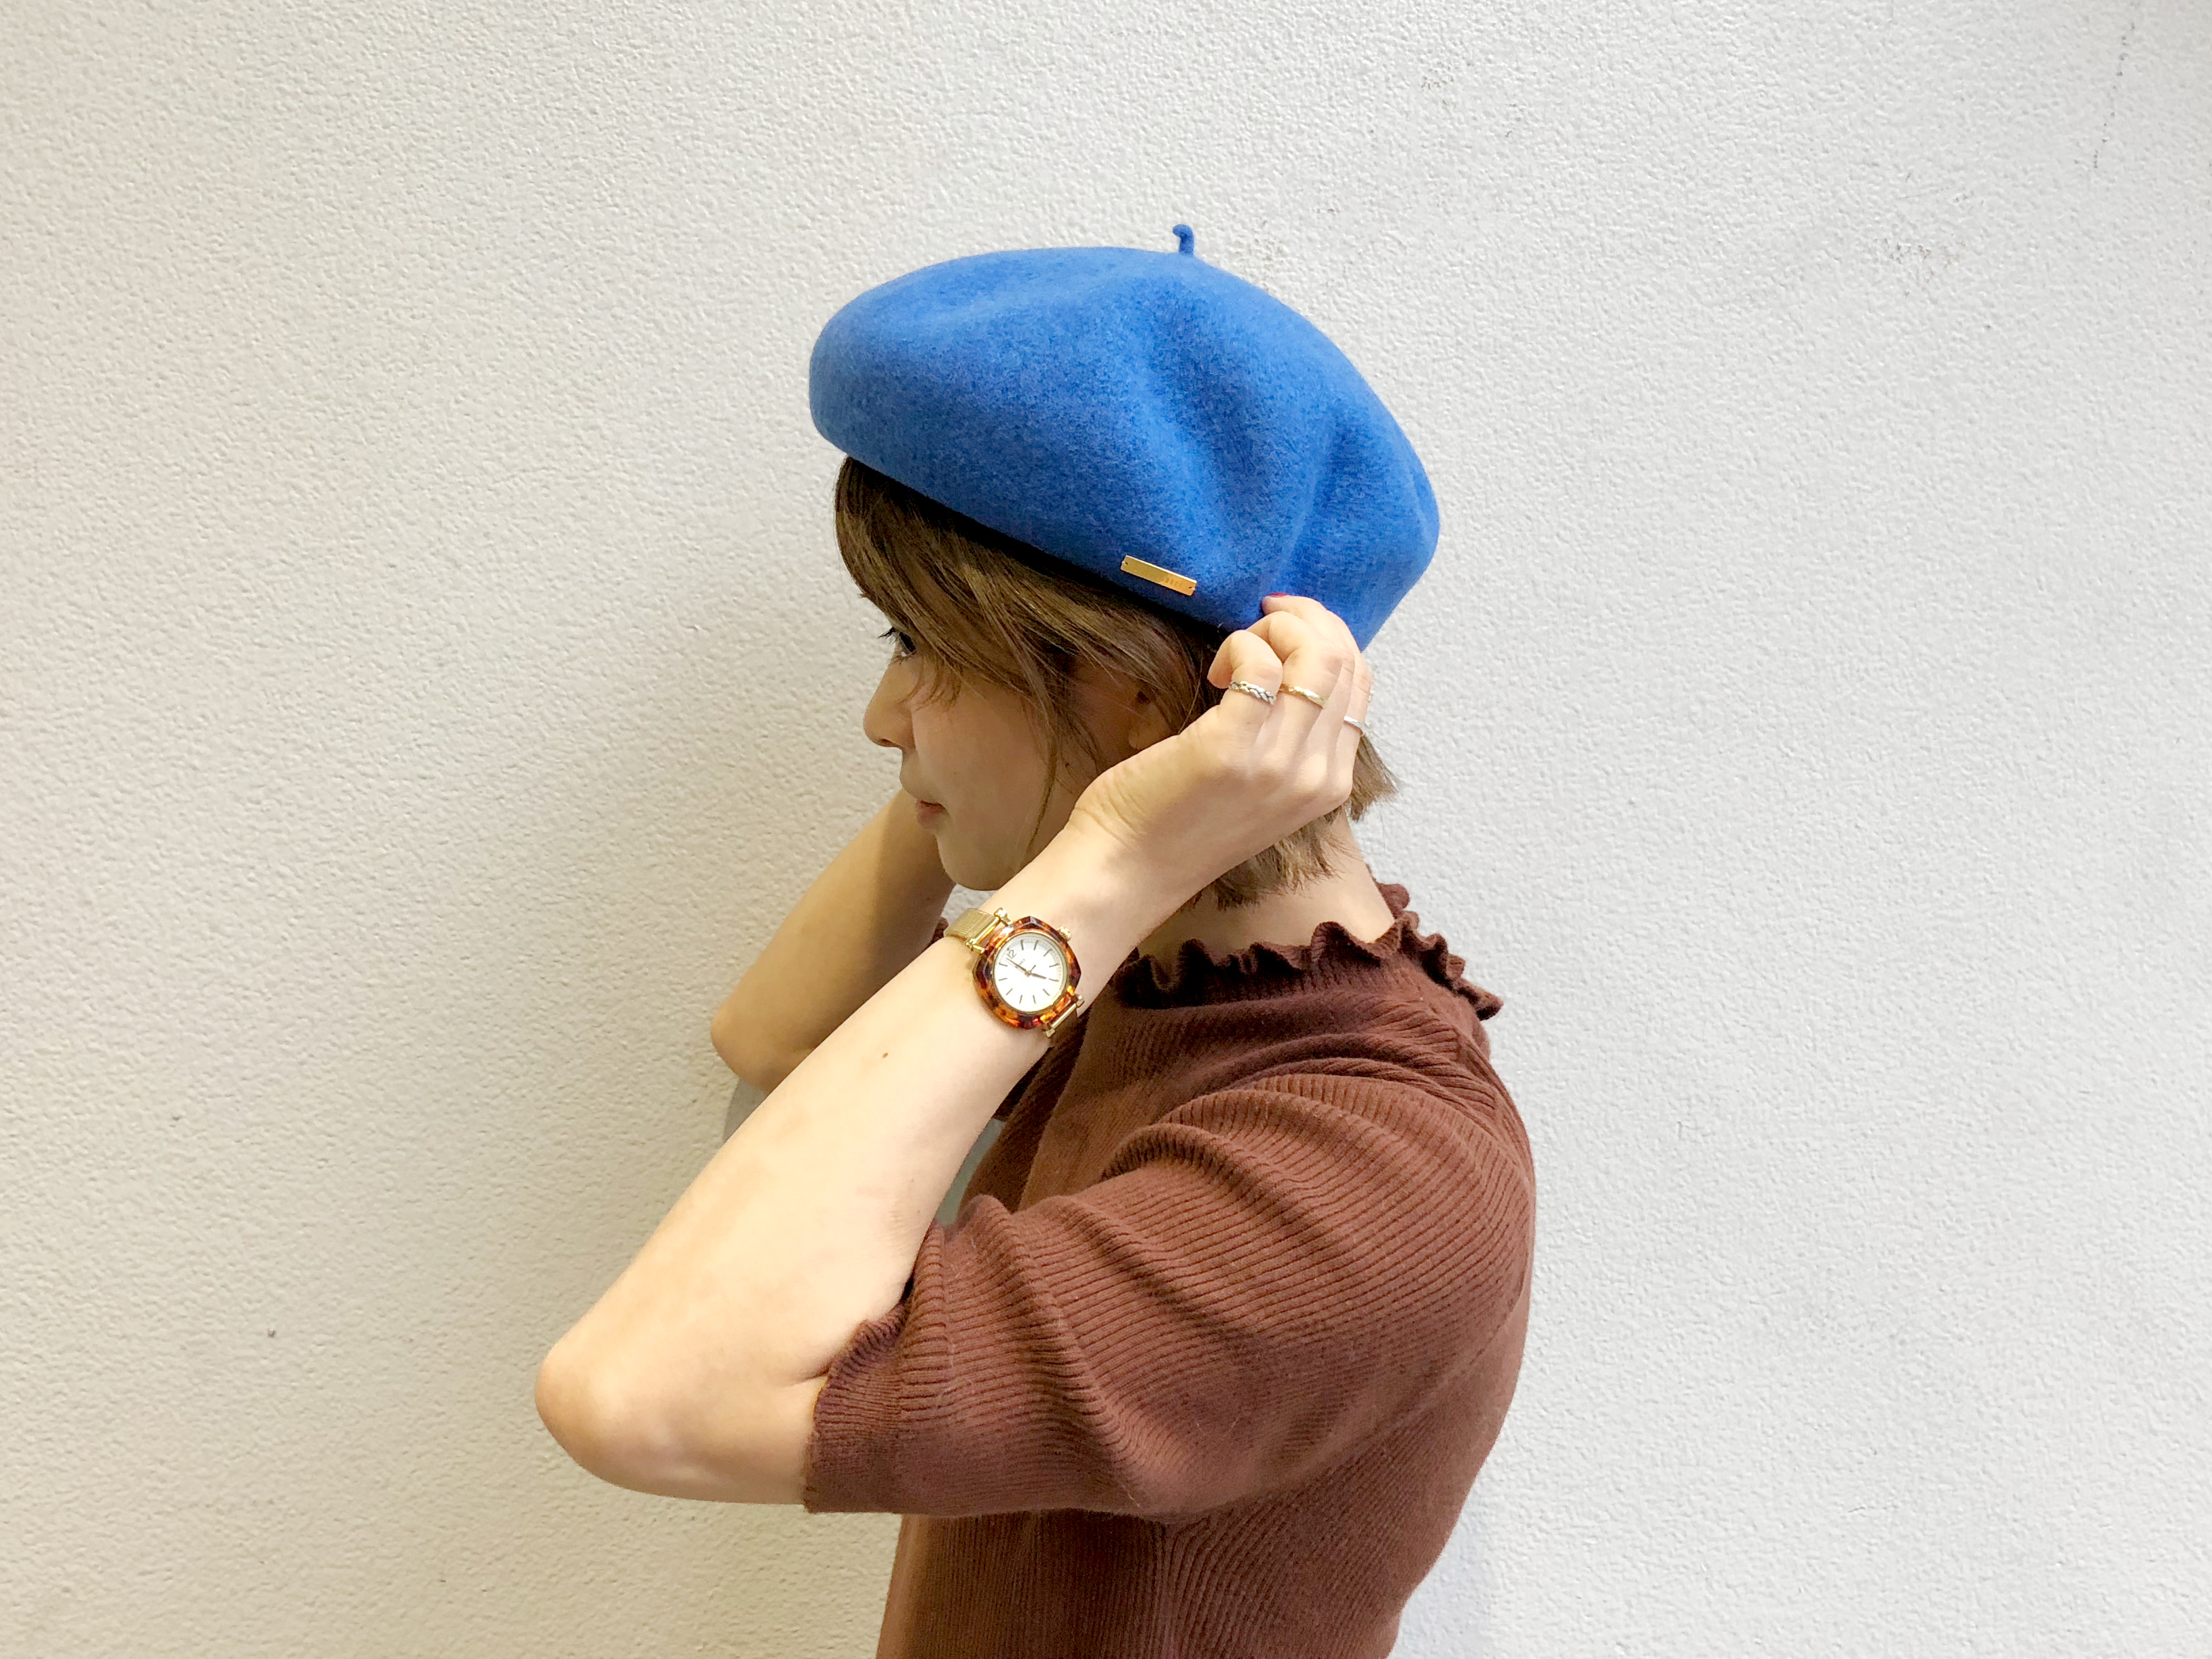 ベレー帽の被り方 ショートボブのヘアスタイル編 カオリノモリ